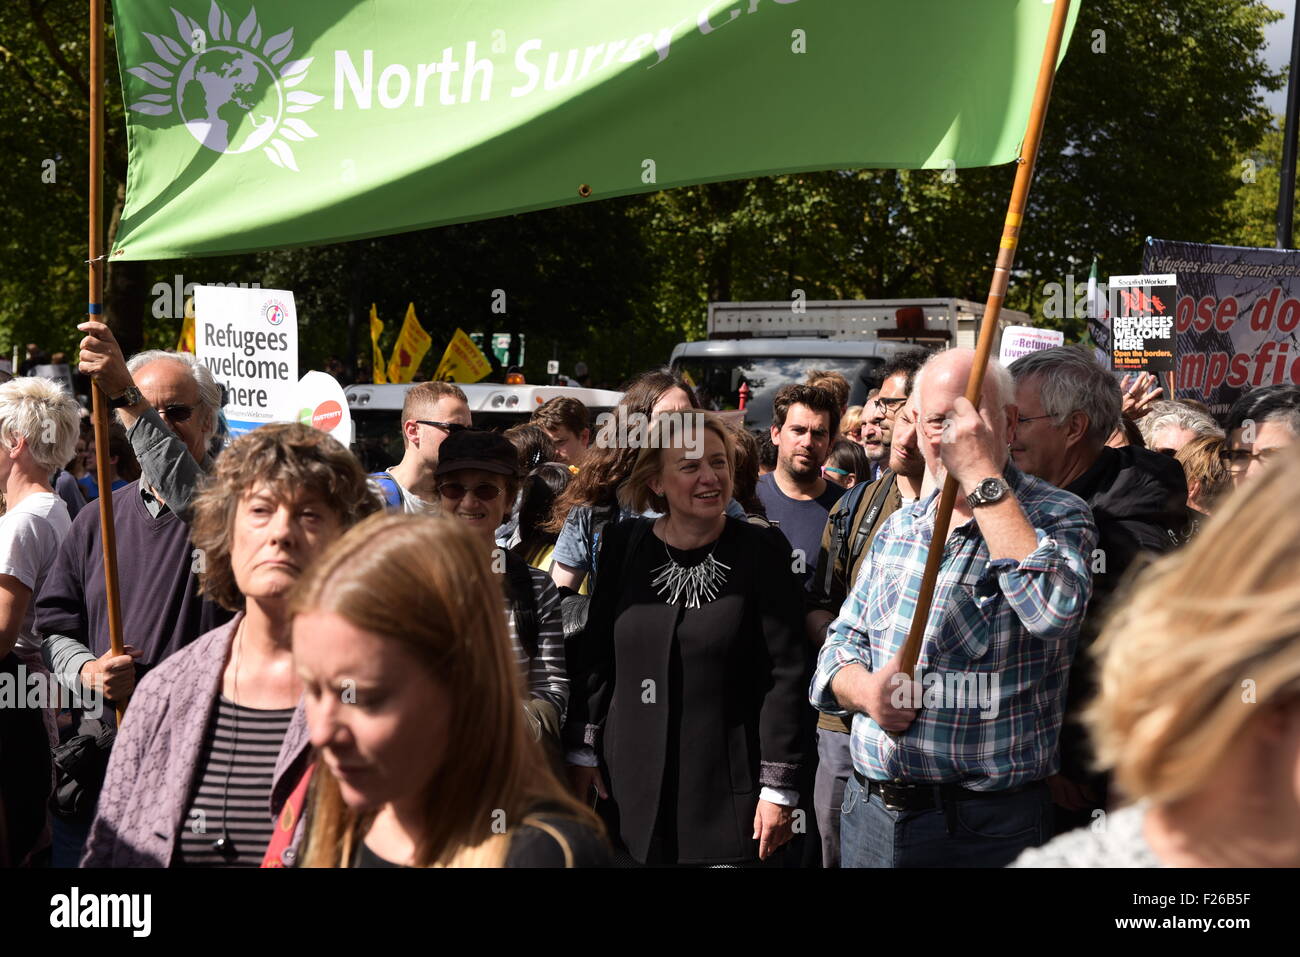 London, UK. 12. Sep, 2015. Grüne Partei Führer Natalie Bennett auf eine Demonstration zu sagen "Flüchtlinge hier begrüßen zu dürfen". Stockfoto